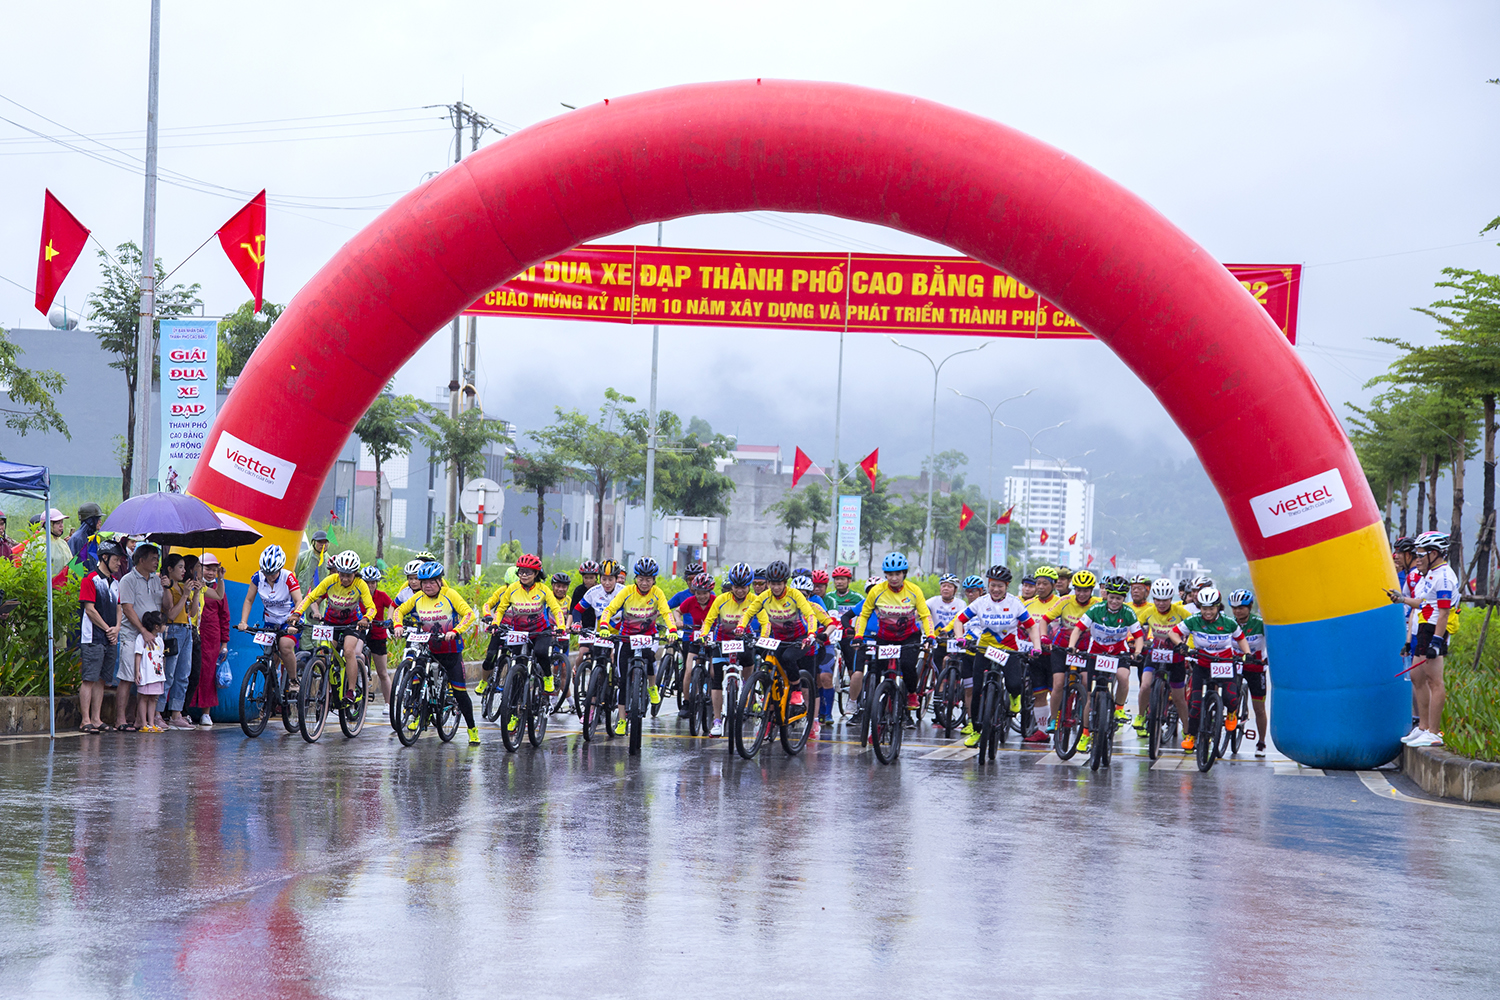 Giải đua xe đạp thành phố Cao Bằng mở rộng năm 2022